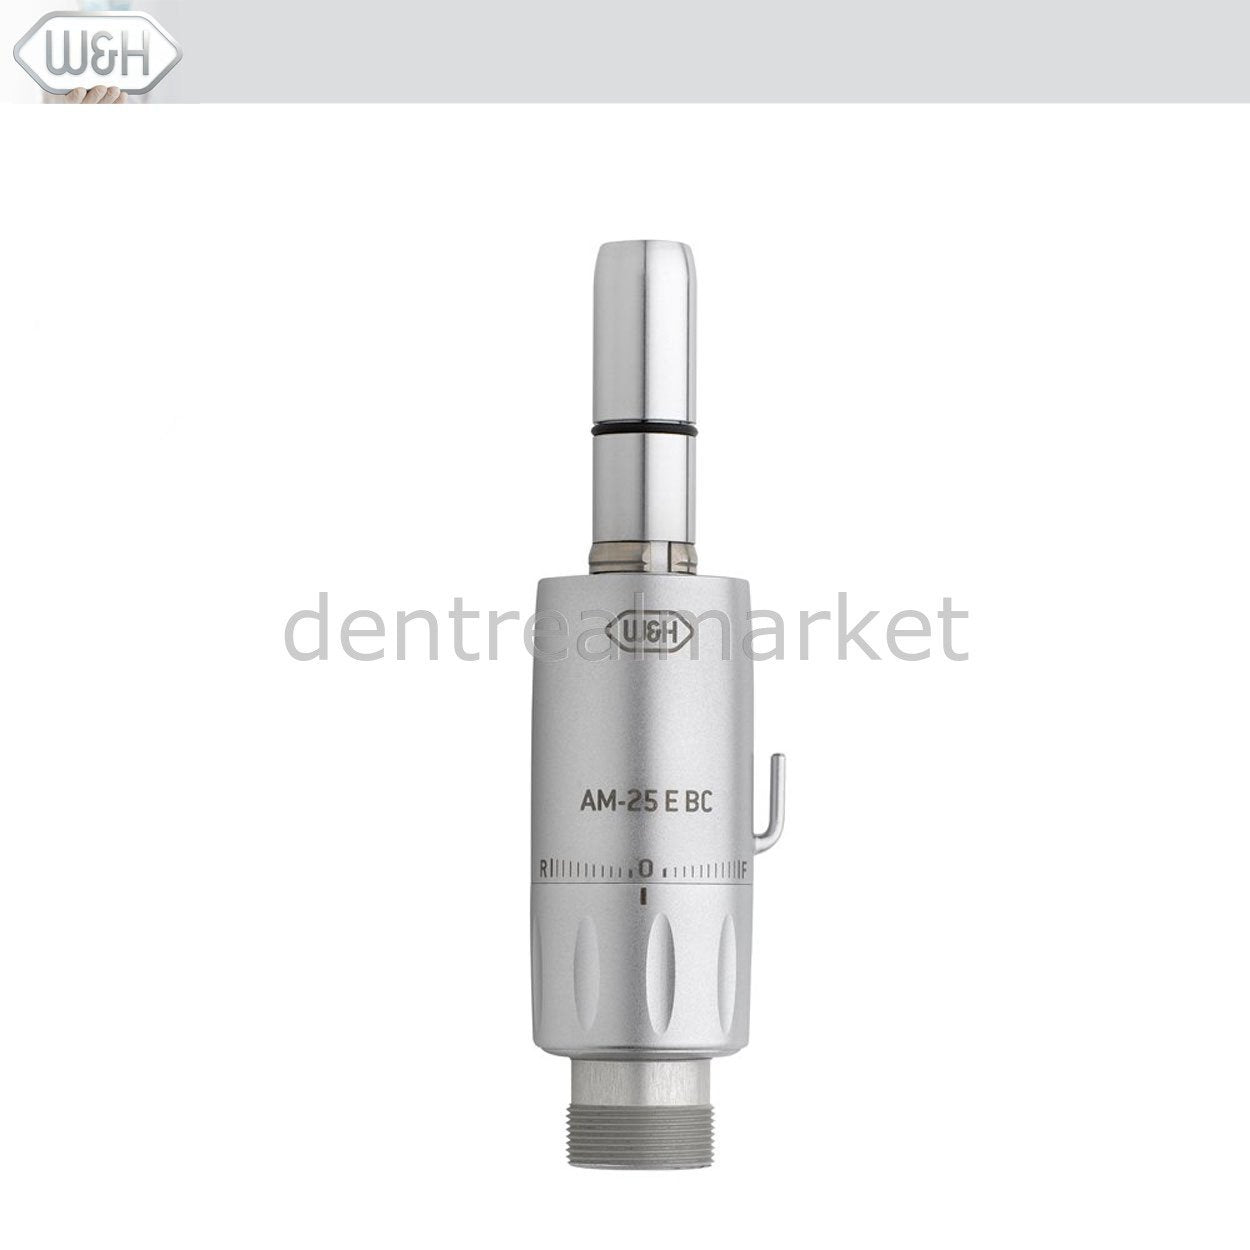 DentrealStore - W&H Dental AM-25 E BC Air Micromotor